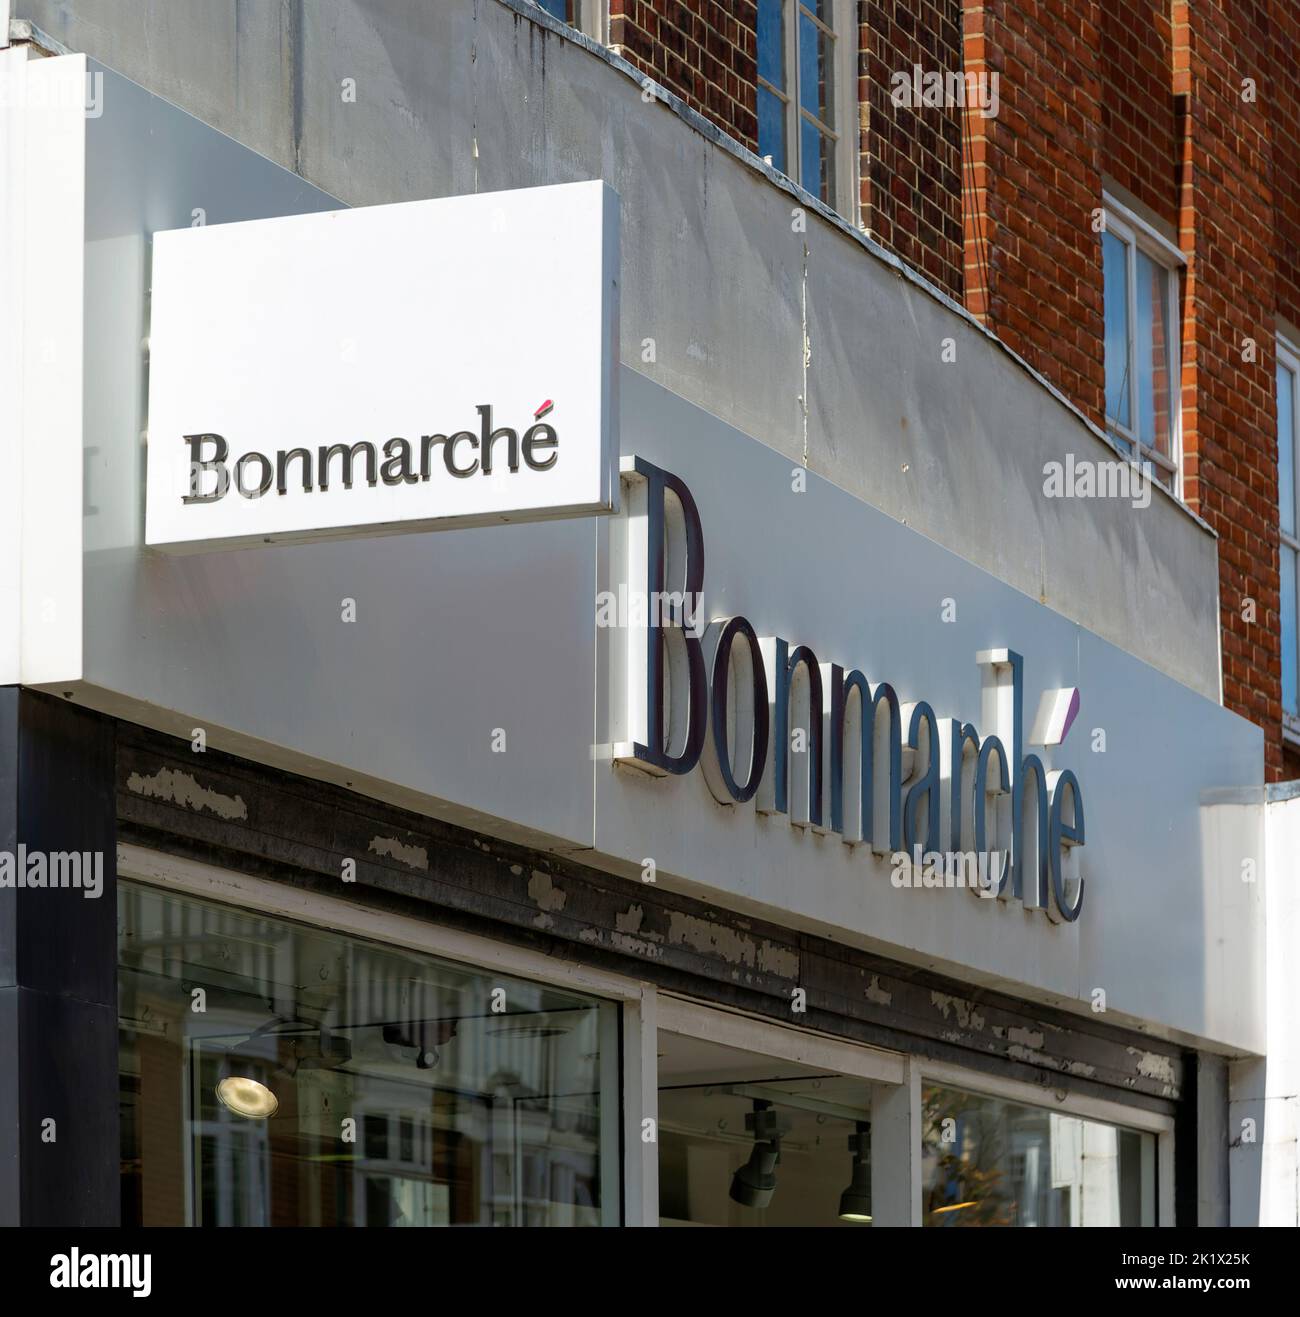 Enseignes de la boutique Bonmarche, Felixstowe, Suffolk, Angleterre, Royaume-Uni Banque D'Images